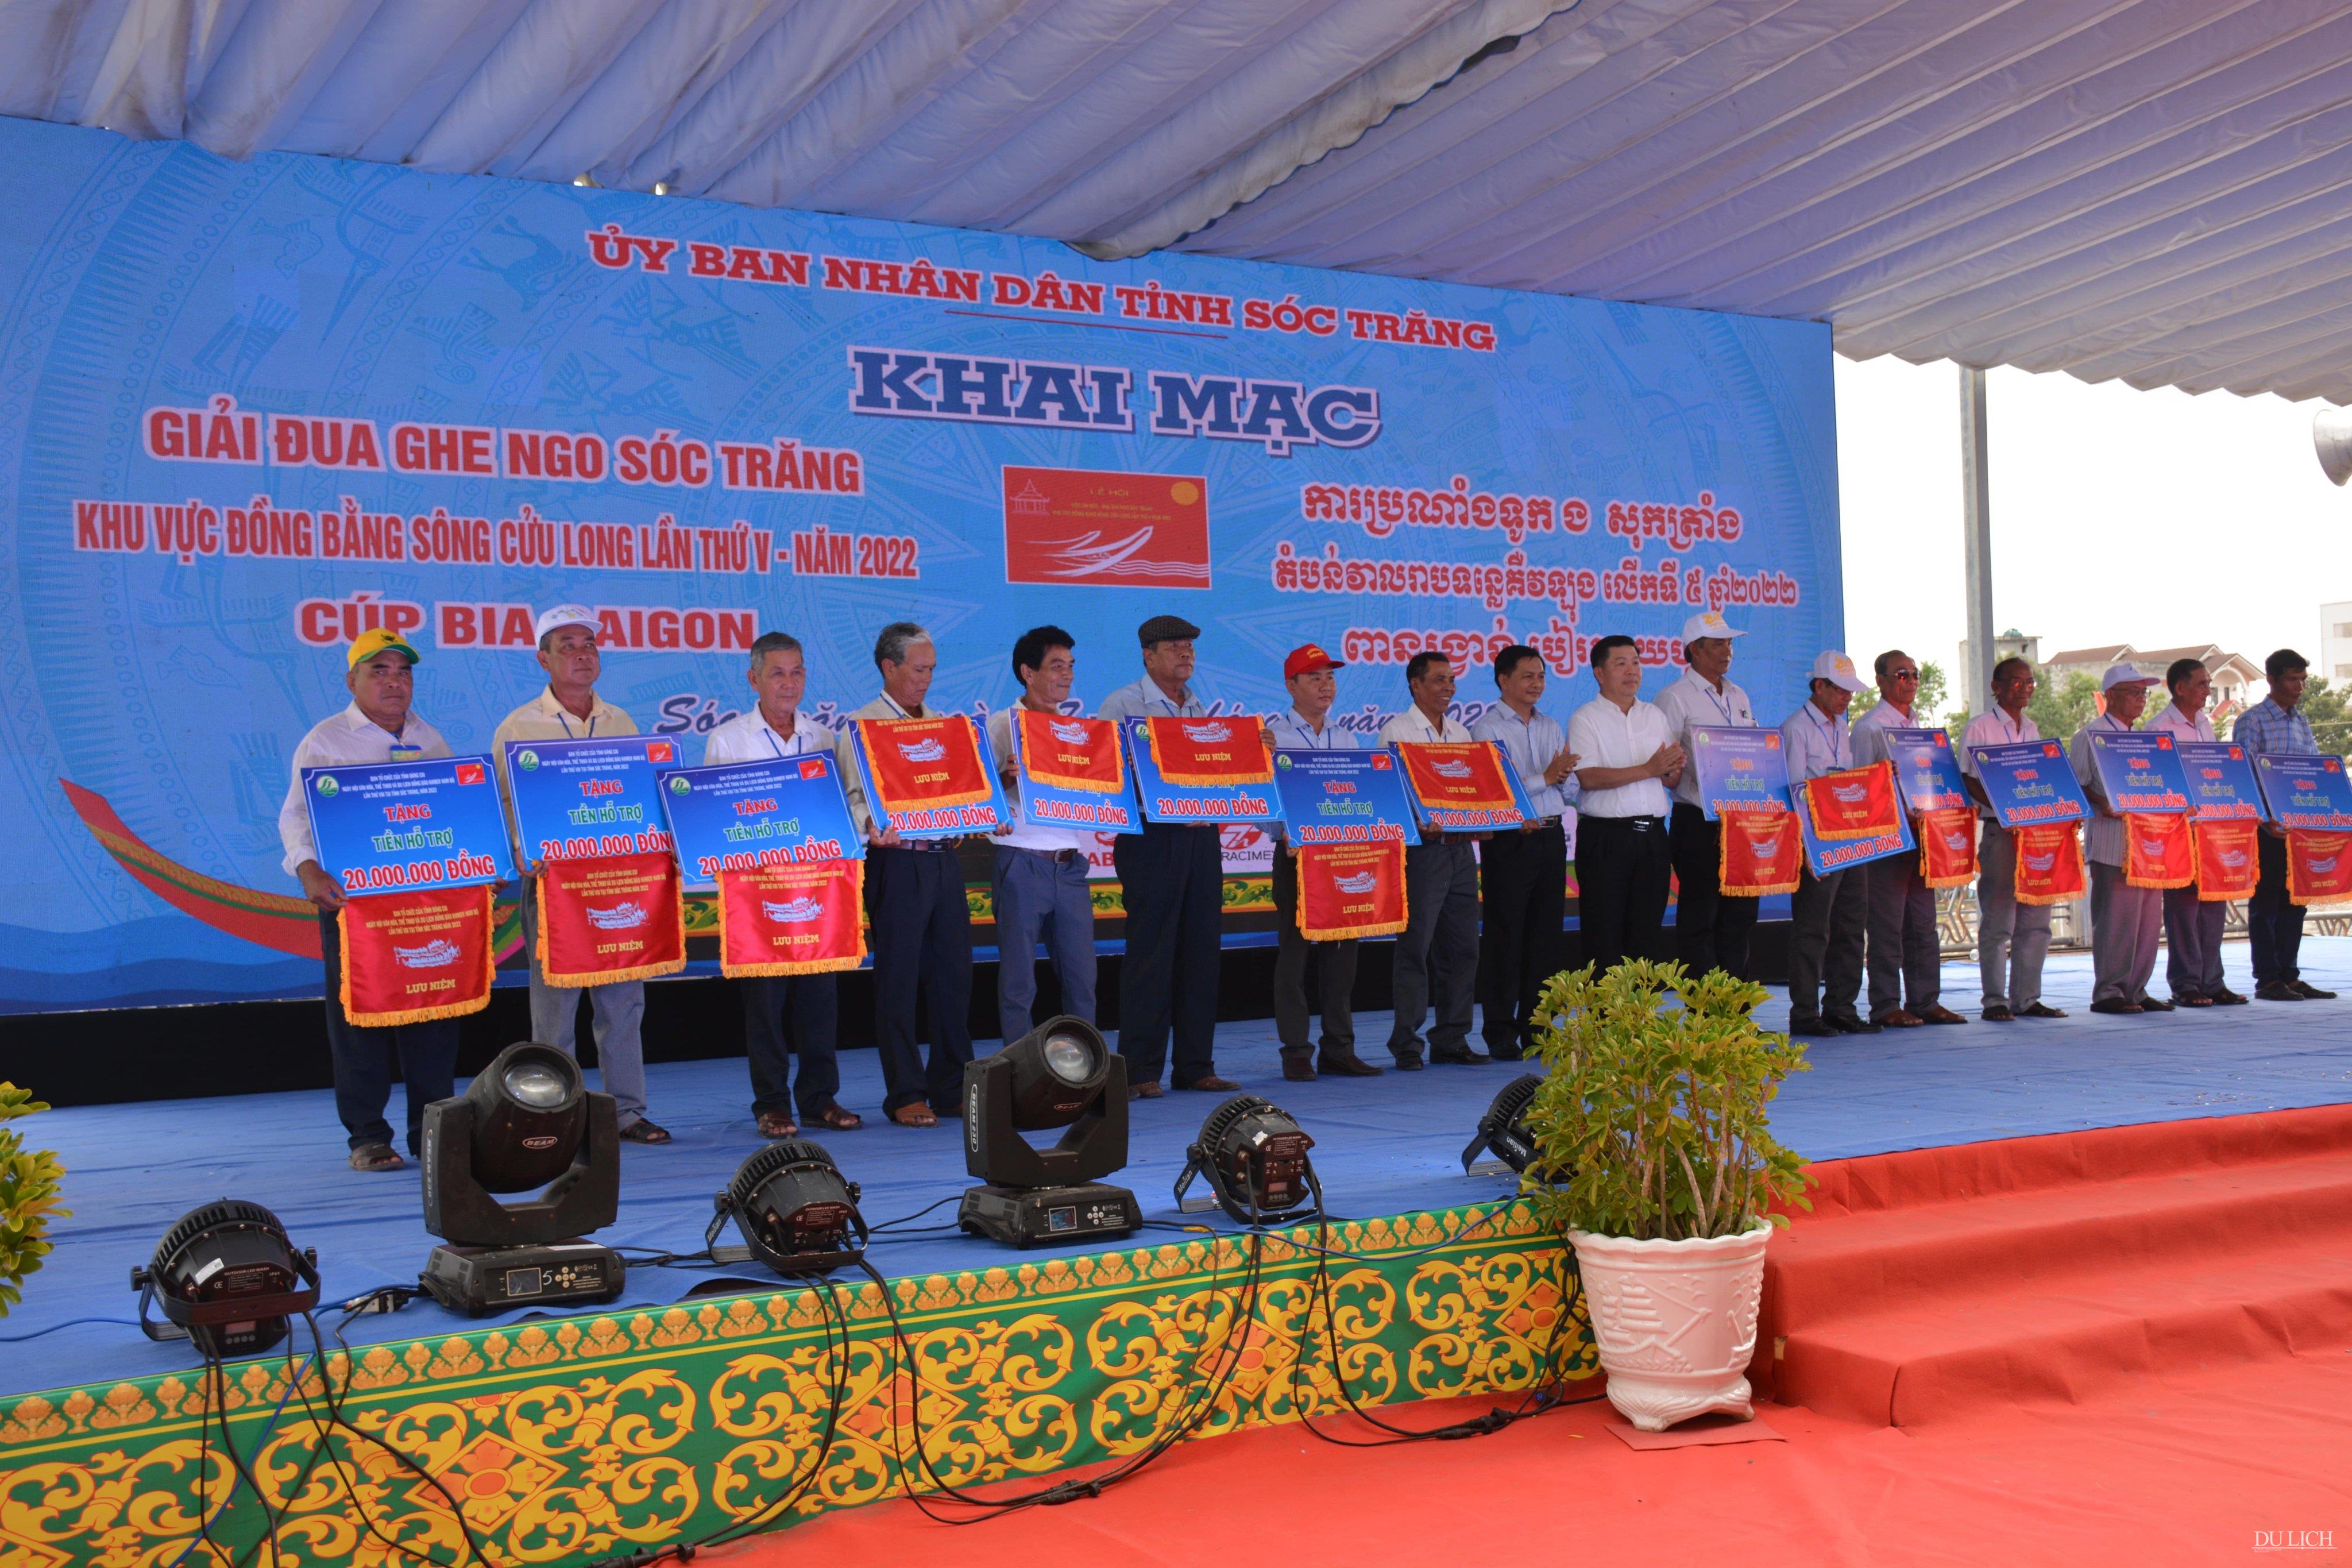 Lãnh đạo tỉnh Sóc Trăng trao tặng tiền hỗ trợ, cờ lưu niệm cho các đội đua ghe Ngo Sóc Trăng năm 2022 - (Ảnh: Trần Lợi)